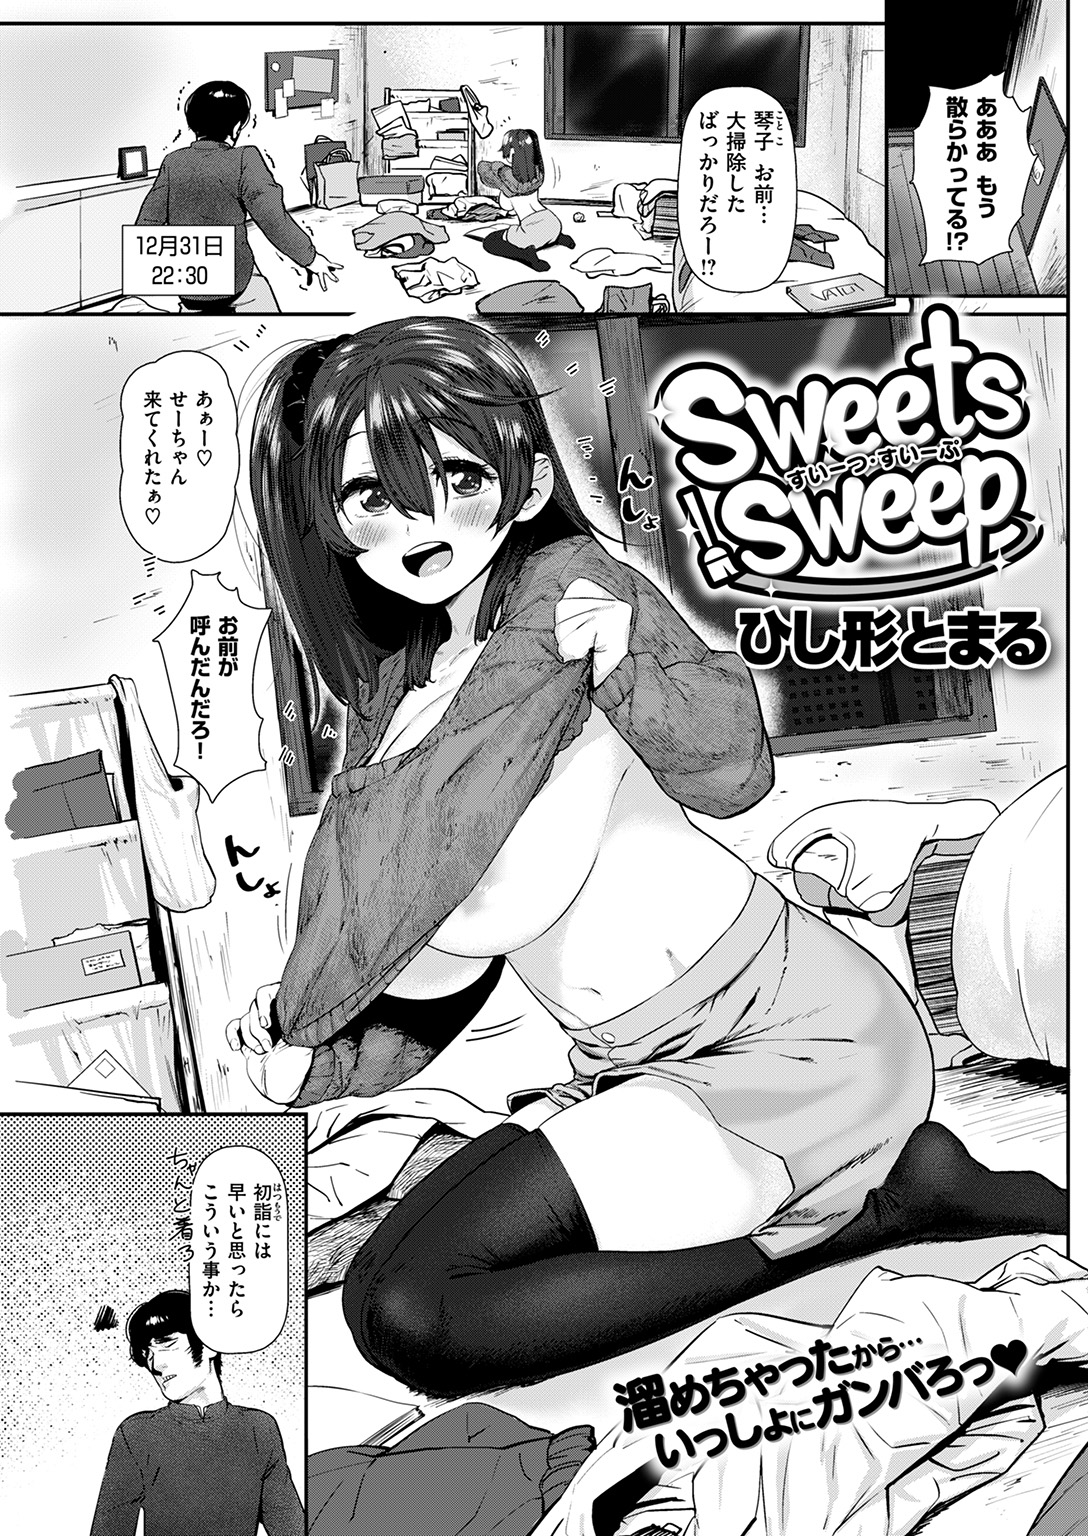 [ひし形とまる] Sweets Sweep - 情色卡漫 -